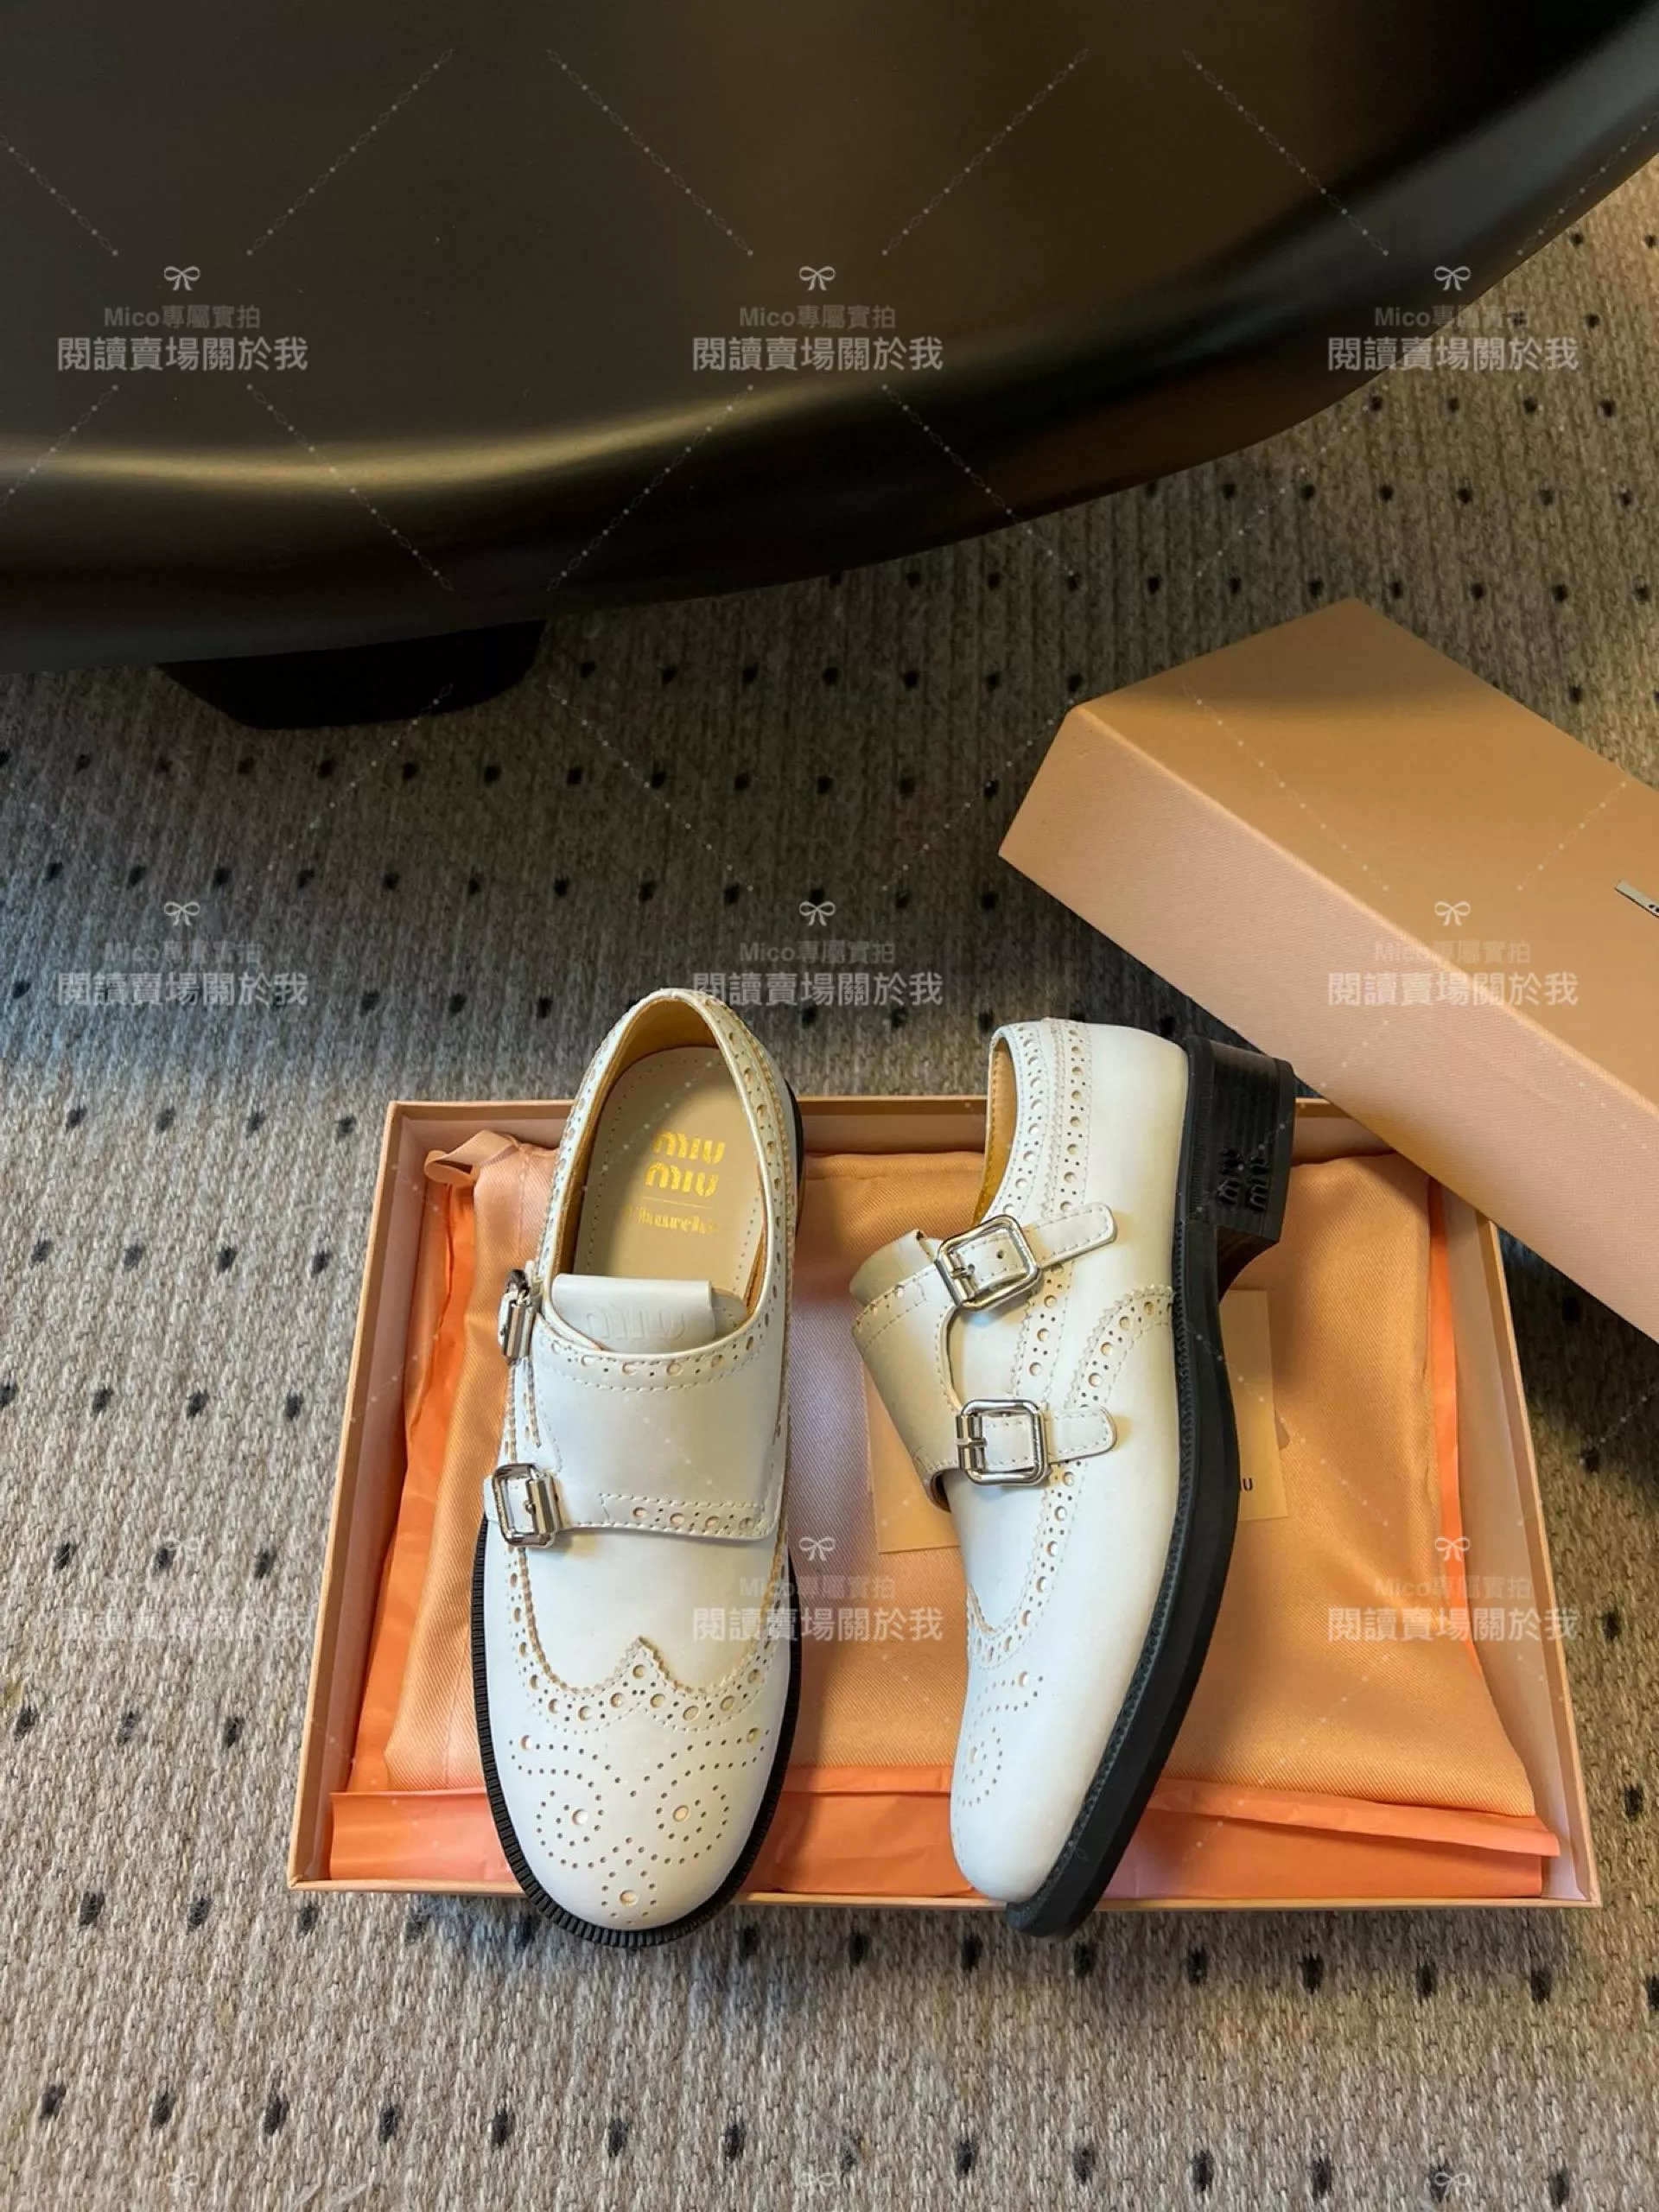 Miumiu x Church‘s 聯名款 擦色白 英倫風雕花德比鞋 皮鞋 紳士鞋 35-40